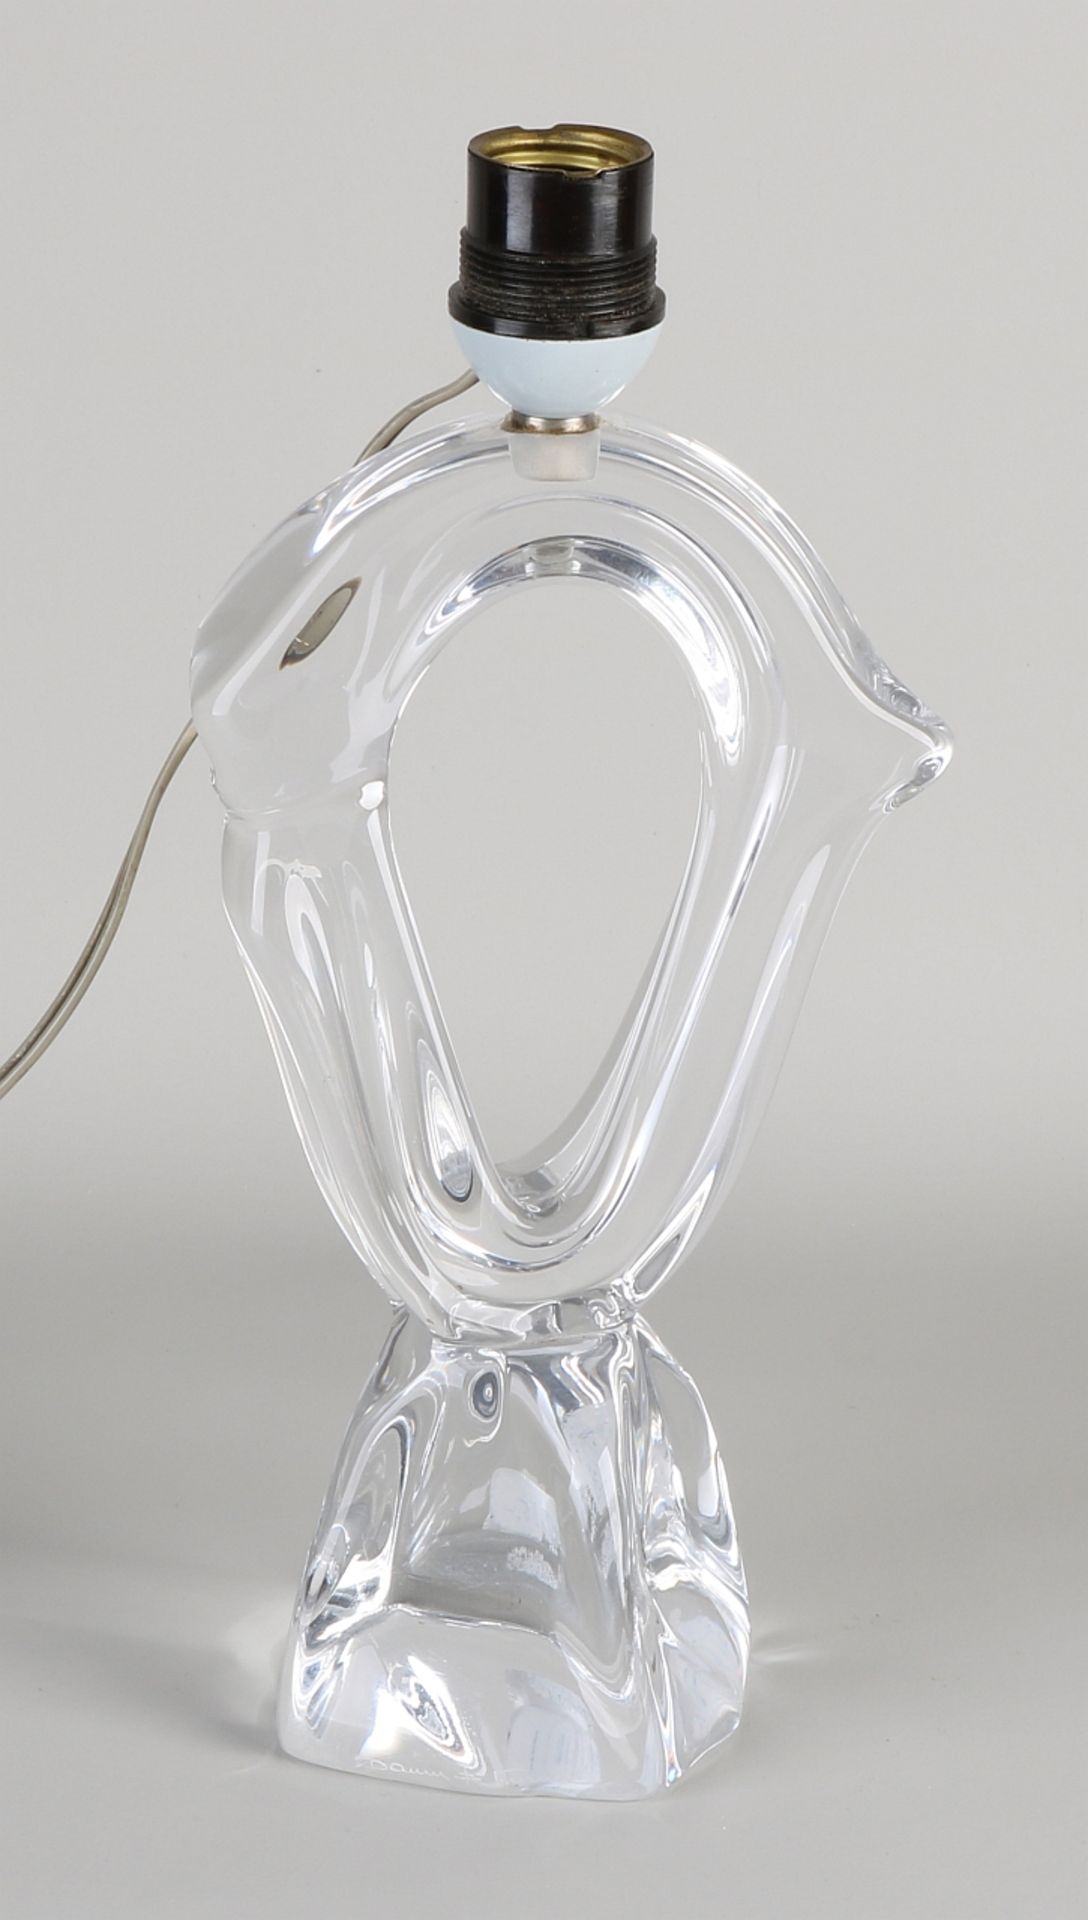 Daum table lamp - Image 2 of 2